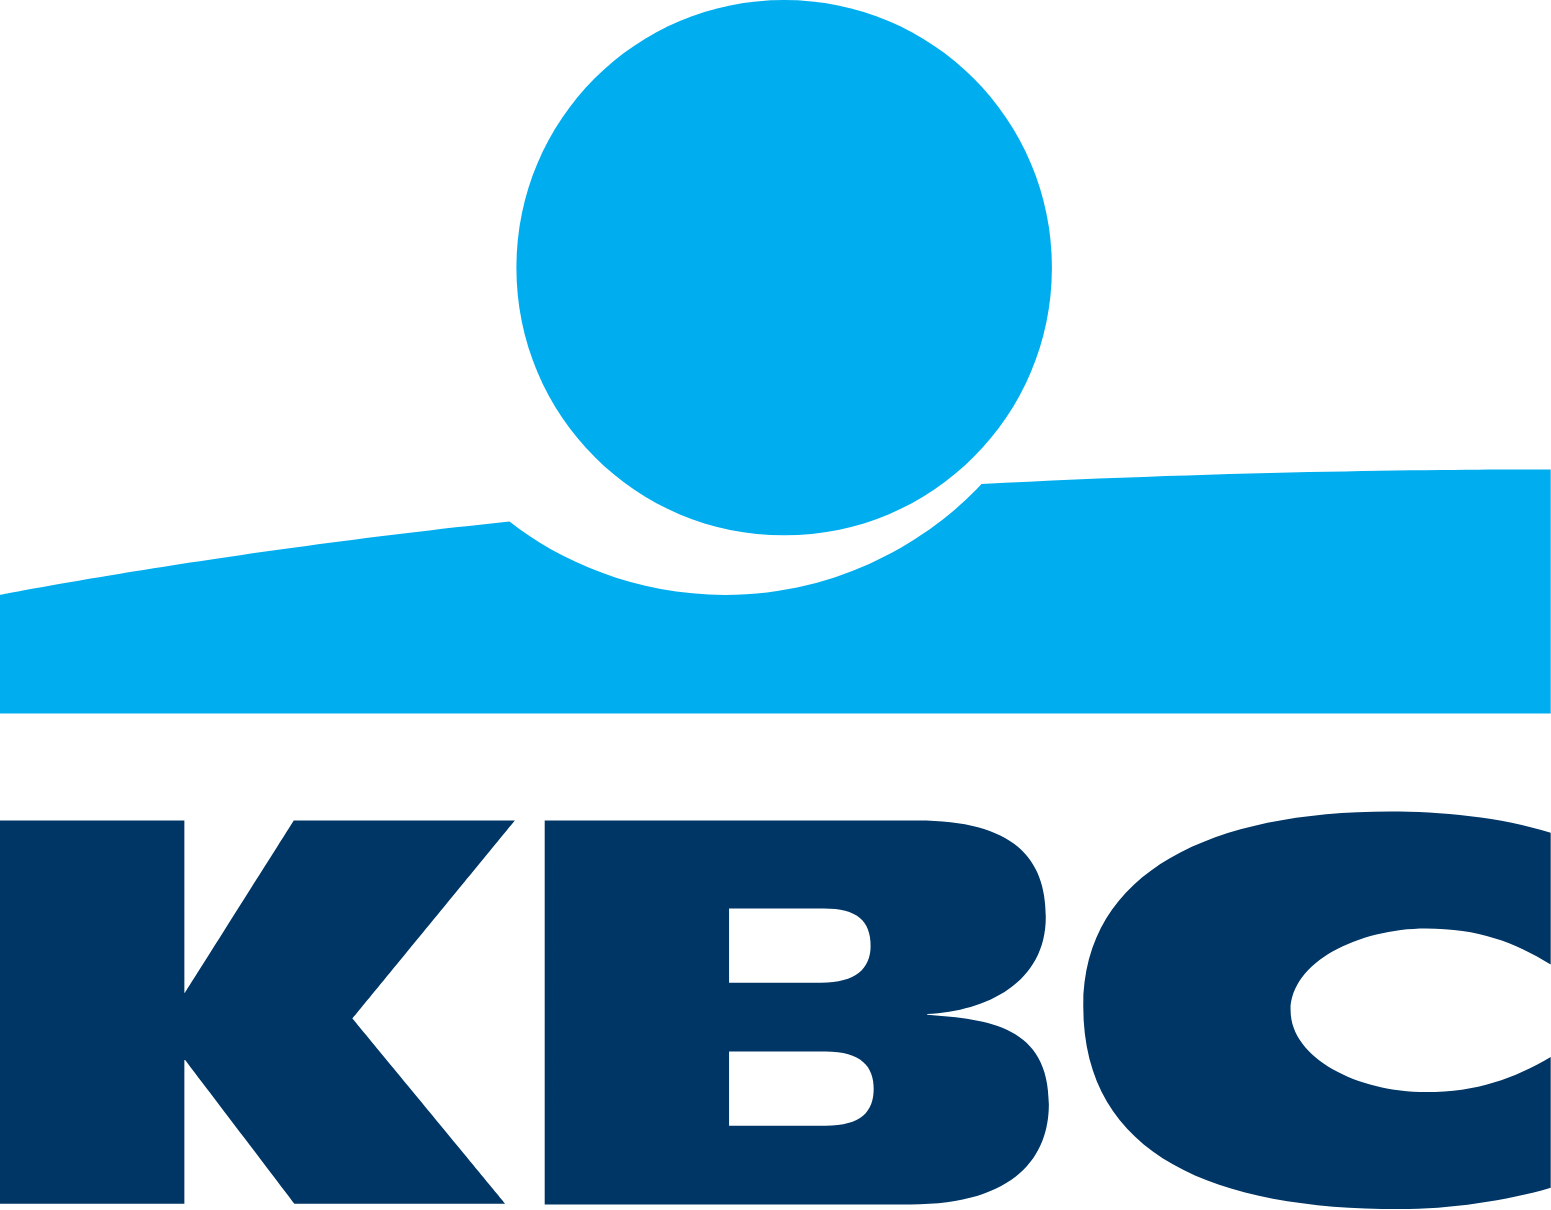 KBC logo (PNG transparent)